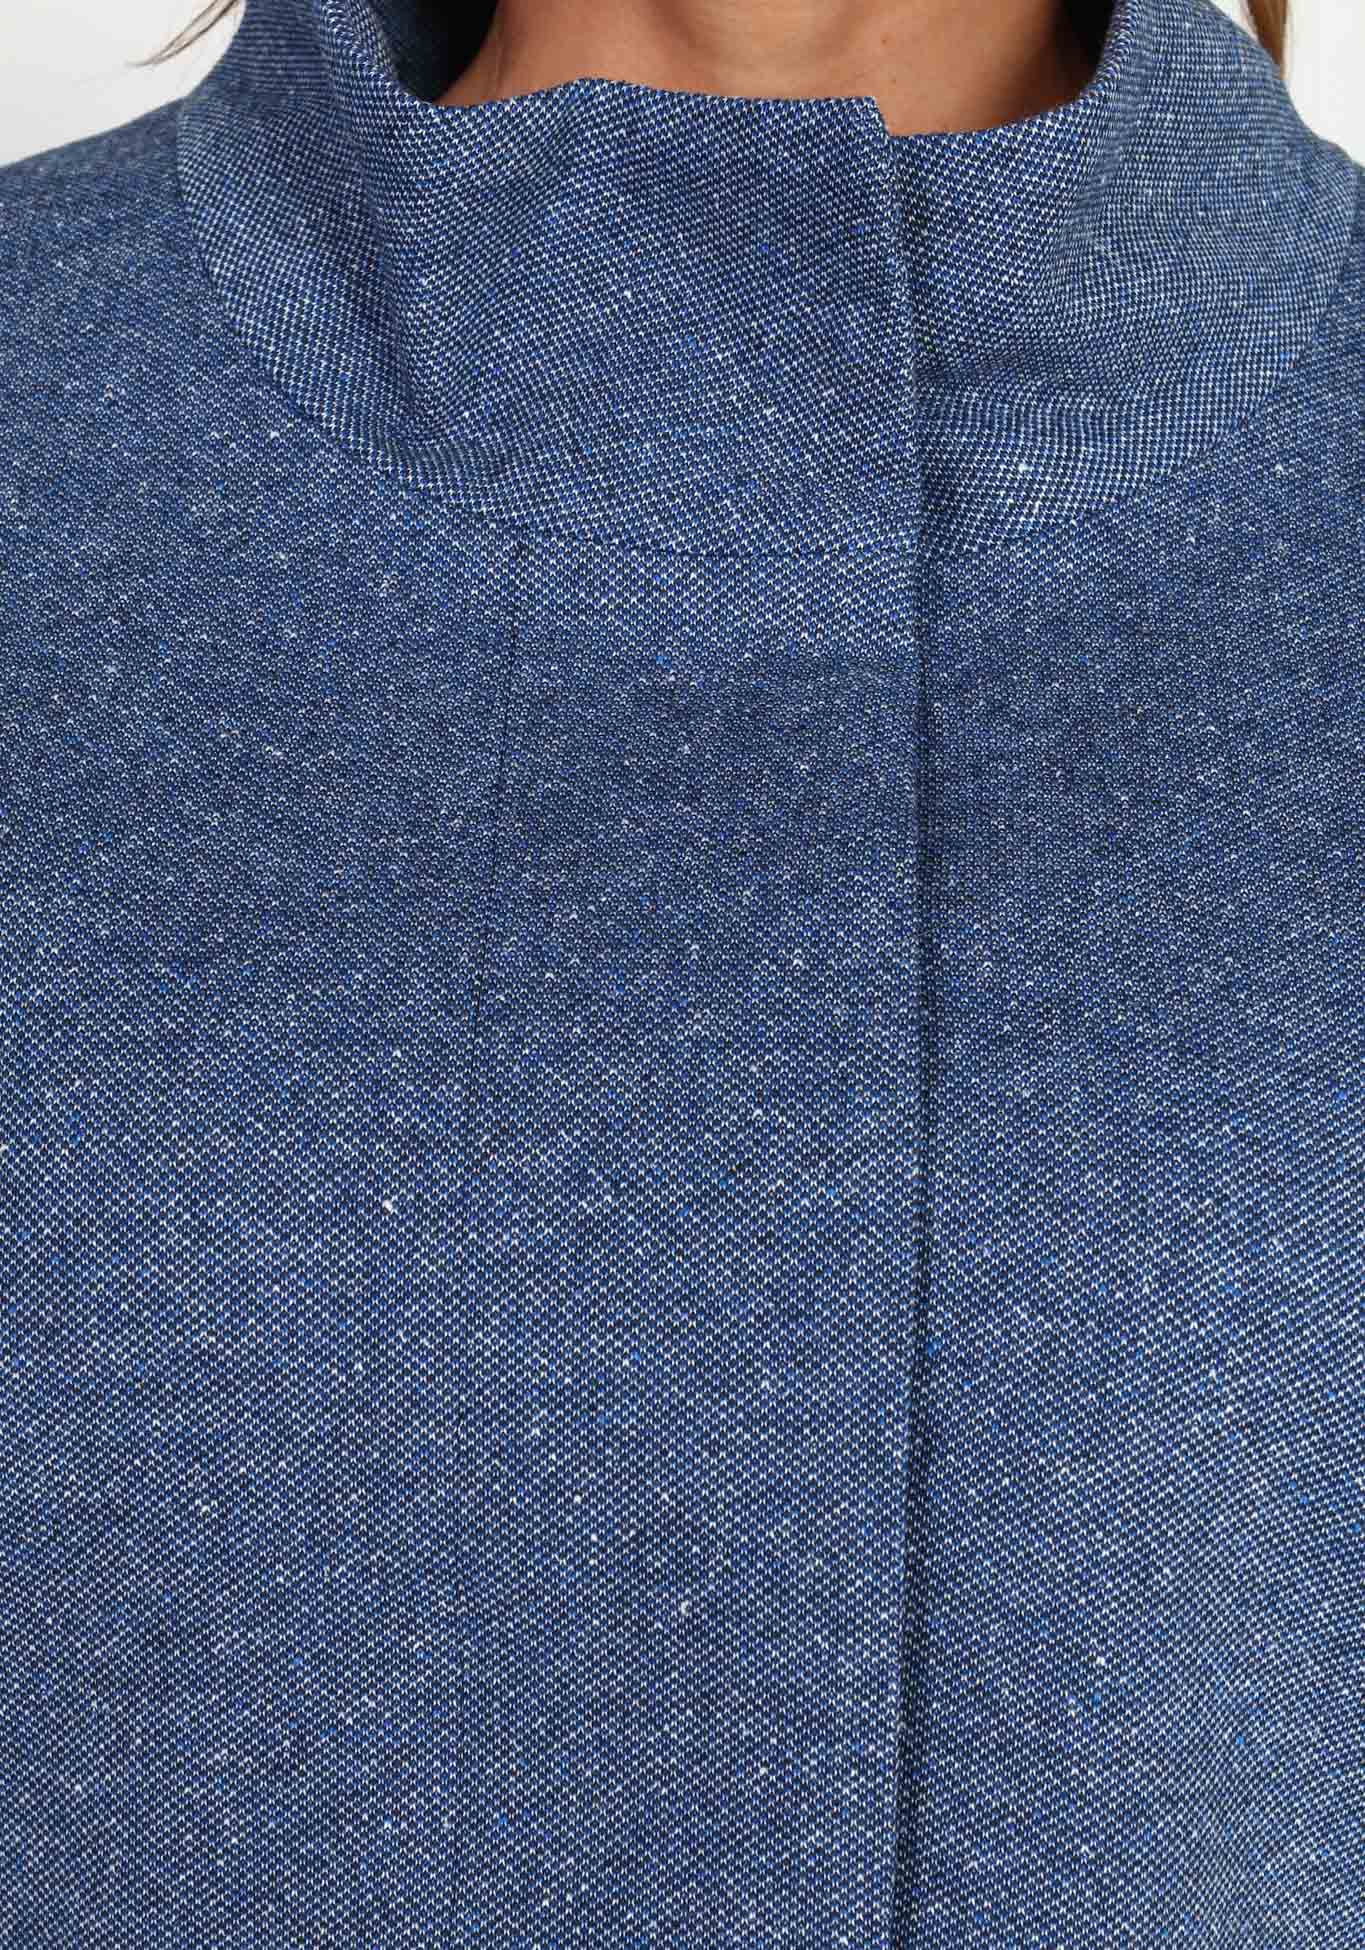 Пальто облегченное с воротником-стойкой Новое Время, размер 48, цвет синий укороченная модель - фото 3